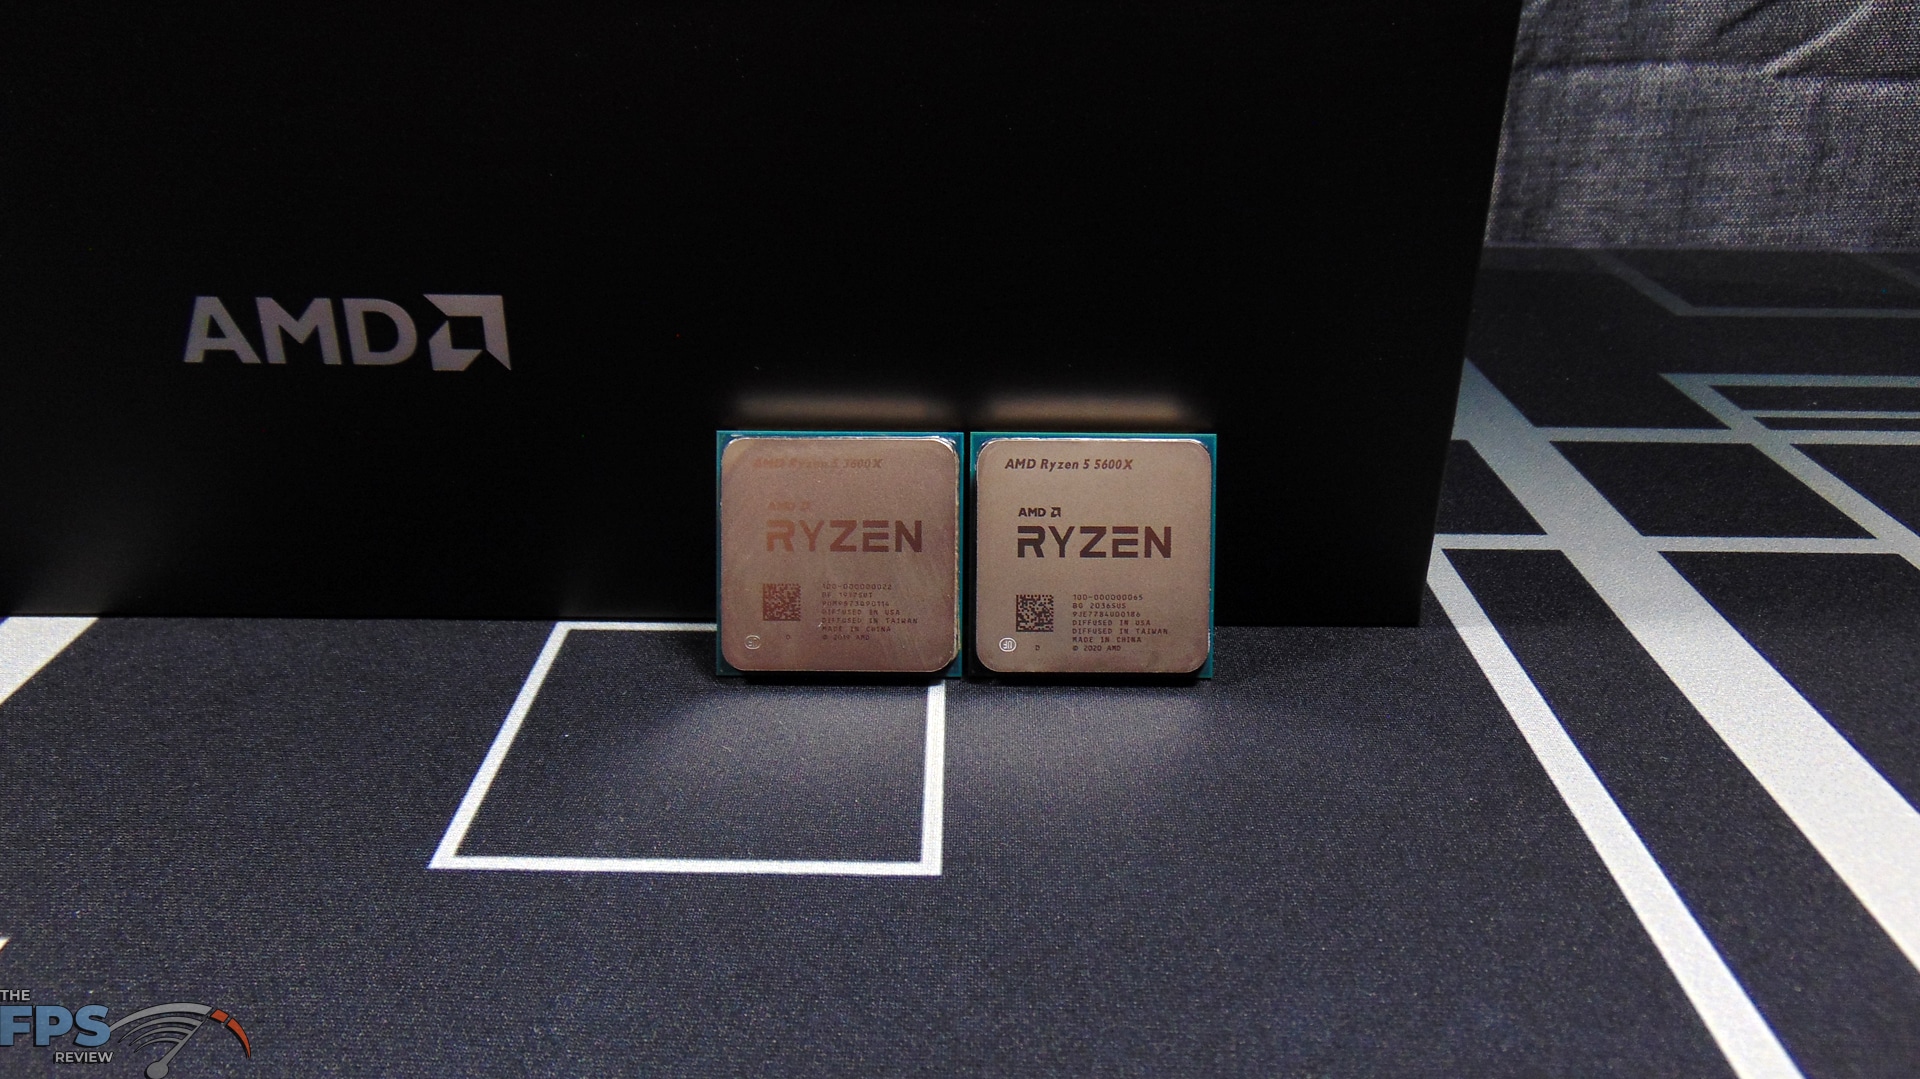 AMD Ryzen 5 5600X vs Ryzen 5 3600X Performance Review - Page 7 of 9